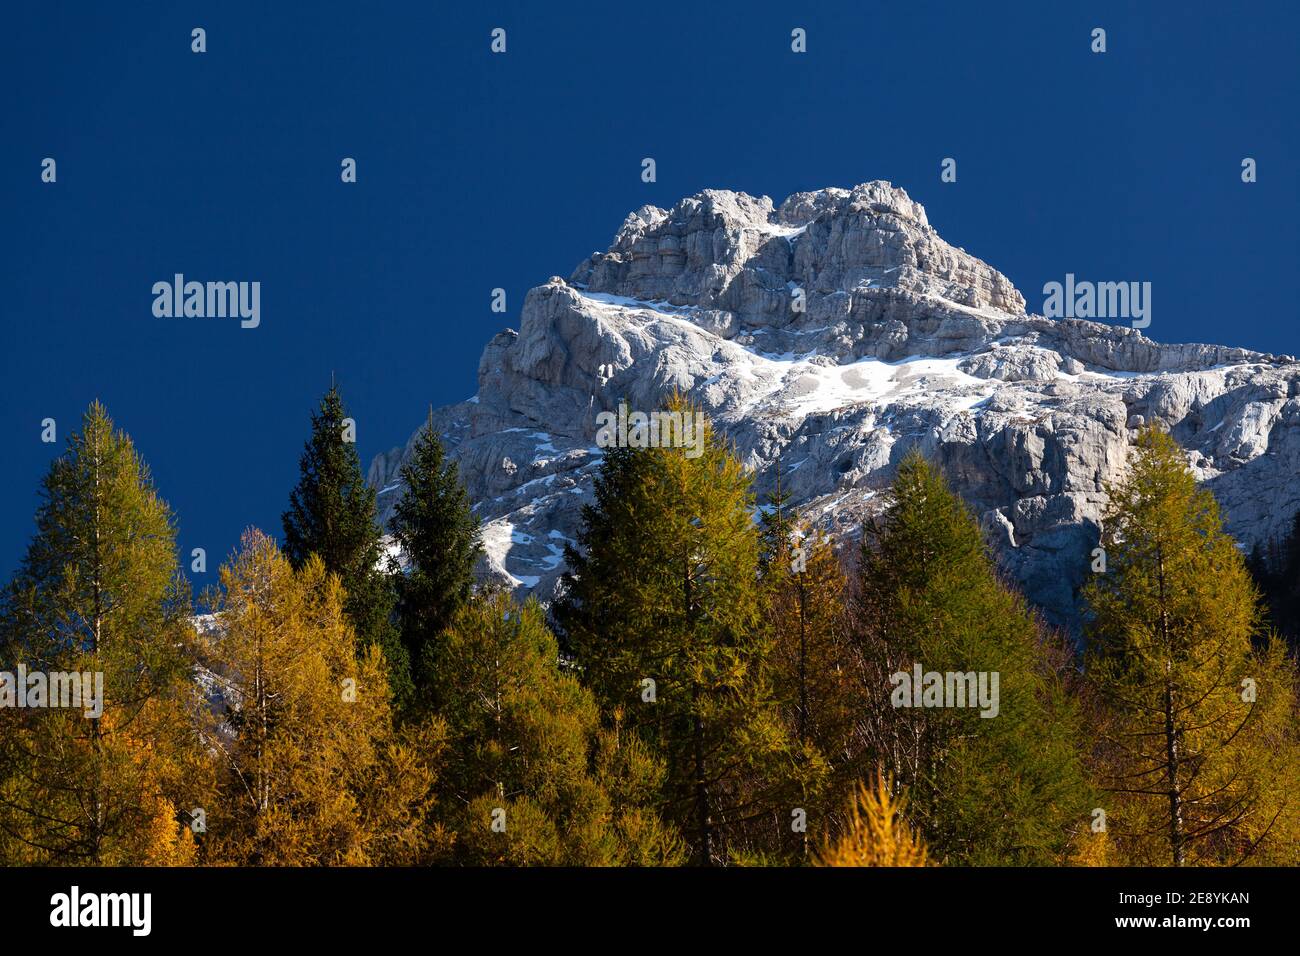 La montagna Razor innevata sopra la valle del Trenta con larici autunnali in primo piano. Foto Stock